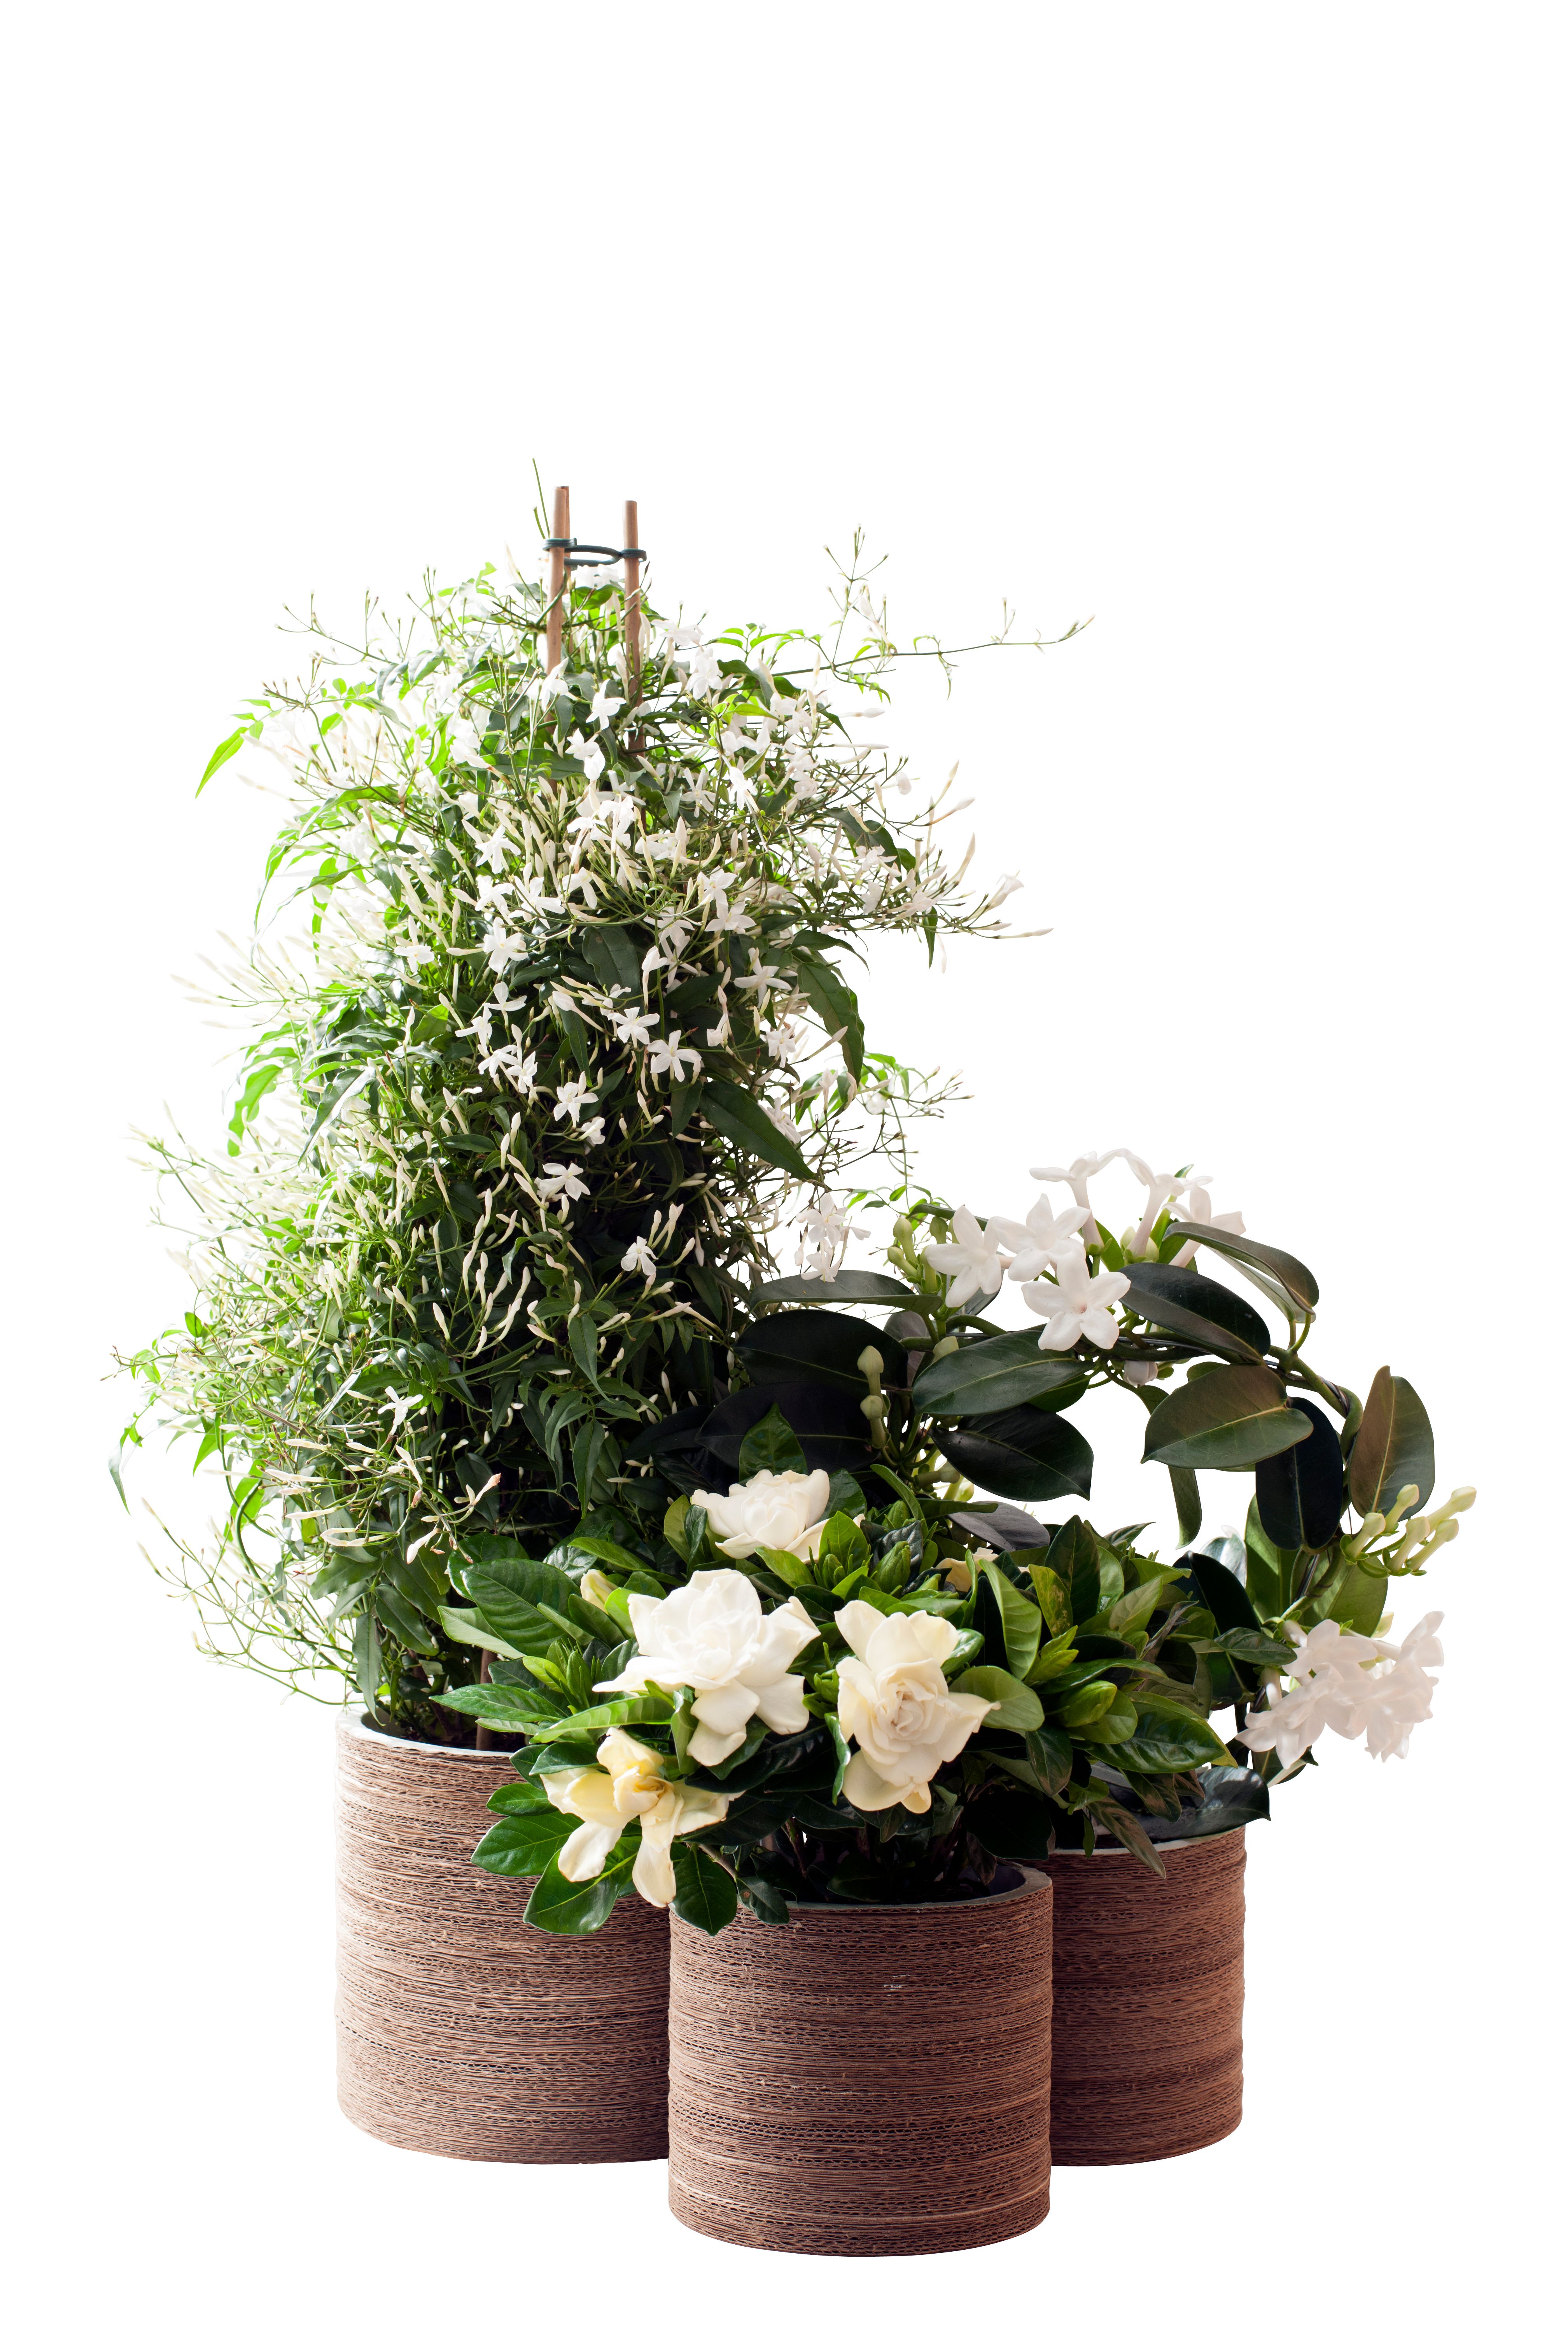 Plantes, plantes fleurs blanches pour votre intérieur